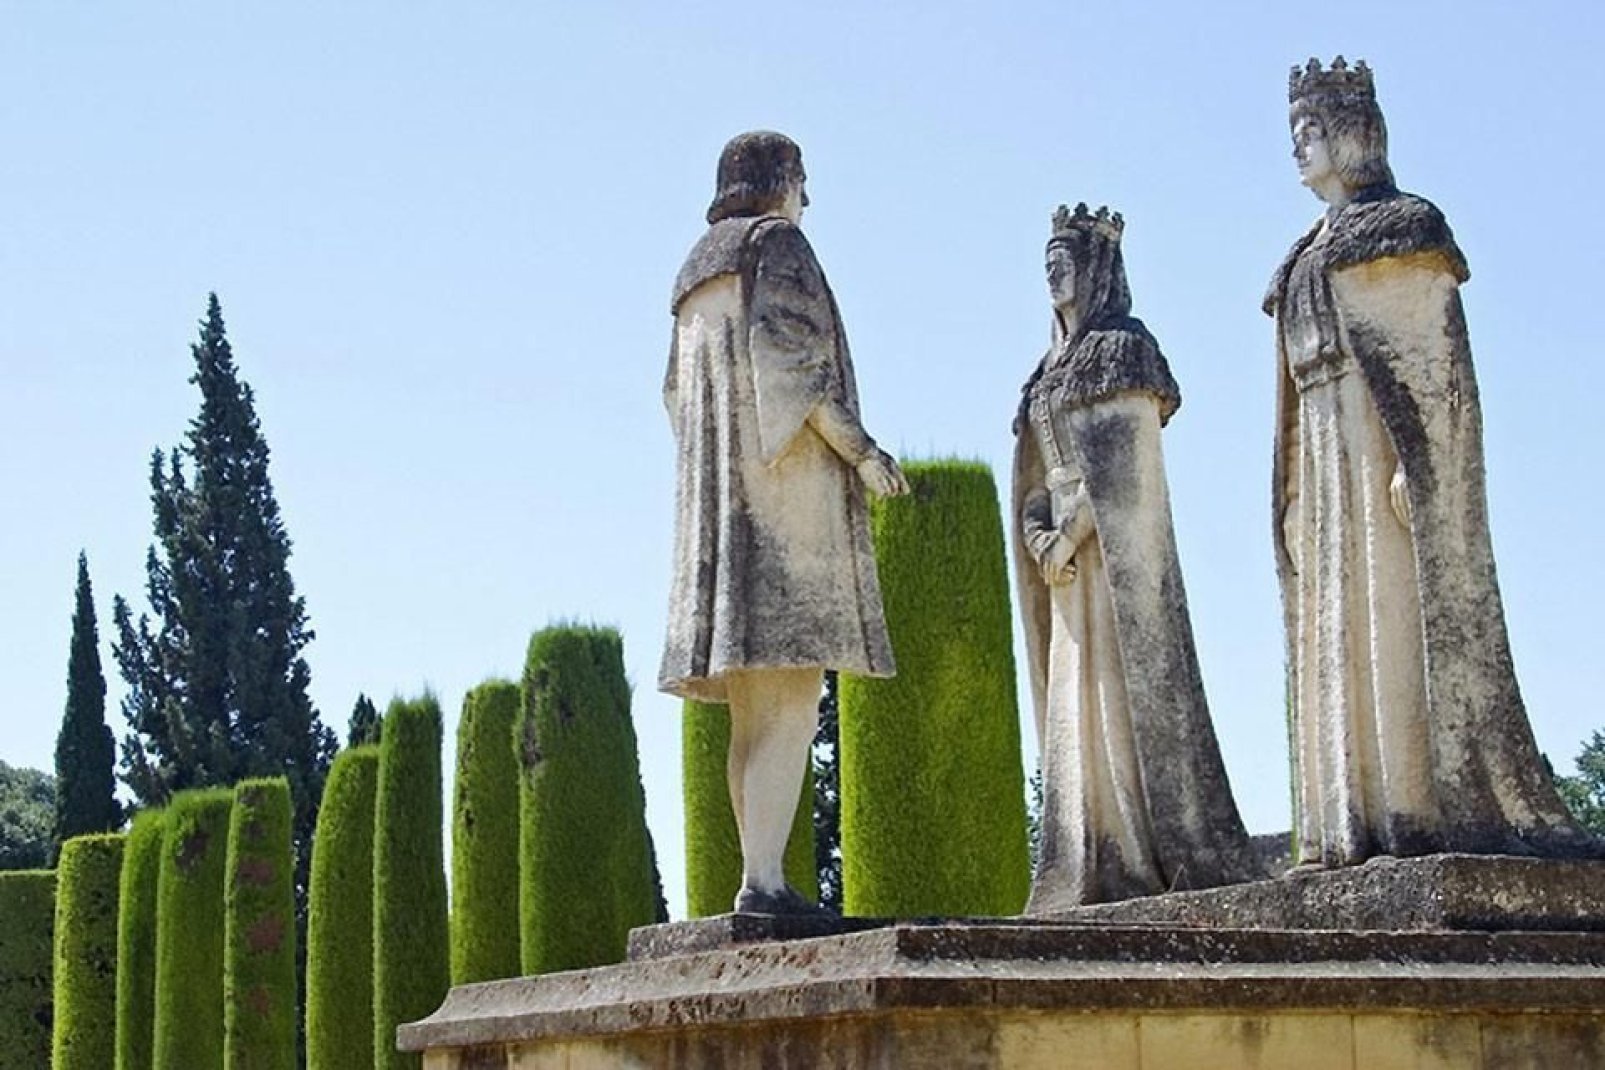 Monumento a los Reyes Católicos y Cristobal Colón en los jardines del Alcazar de los Reyes Cristianos en Córdoba.